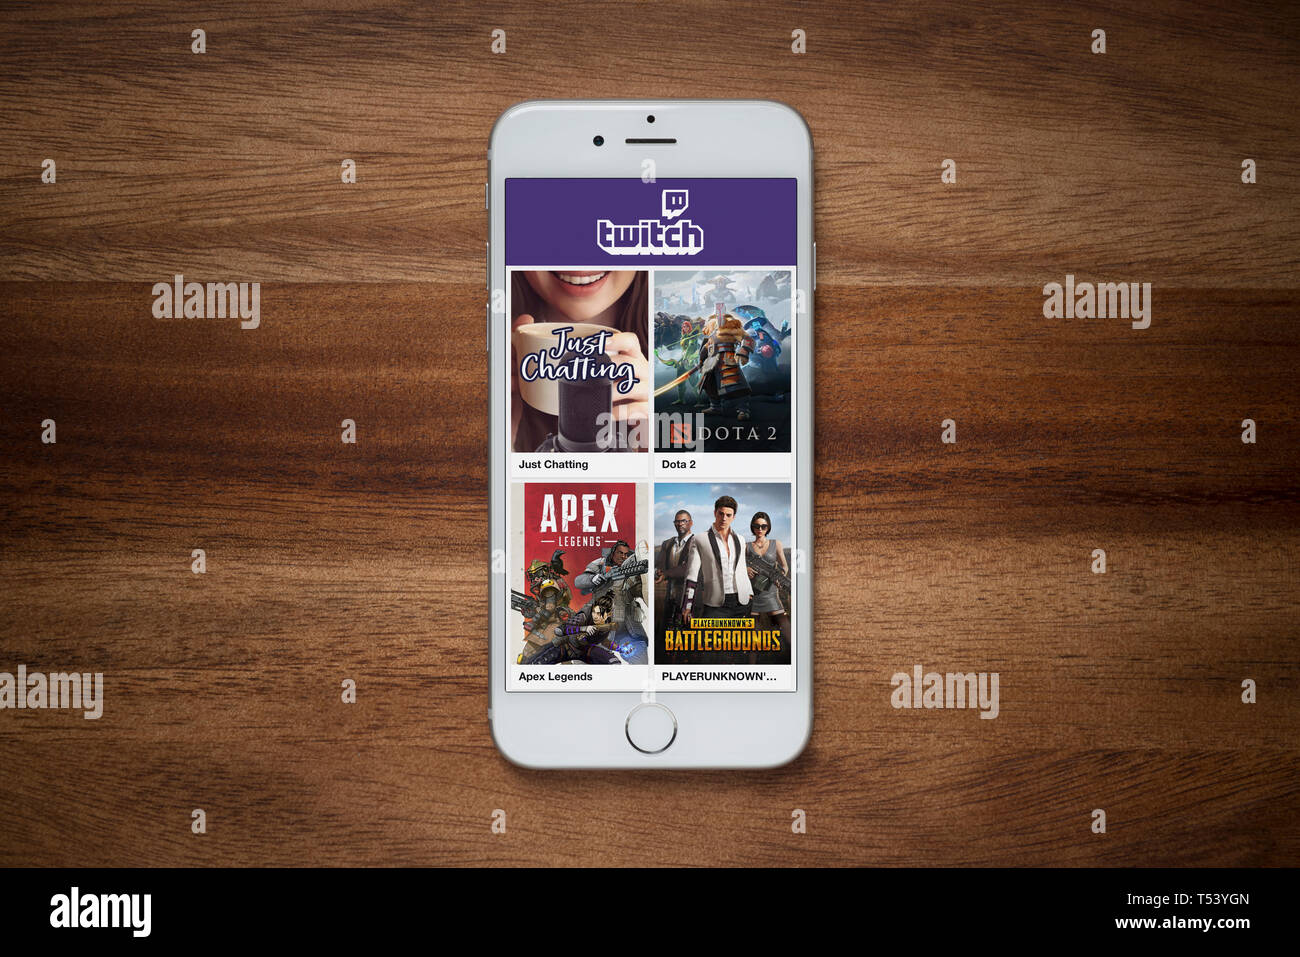 Un iPhone montrant le site Twitch repose sur une table en bois brut (usage éditorial uniquement). Banque D'Images